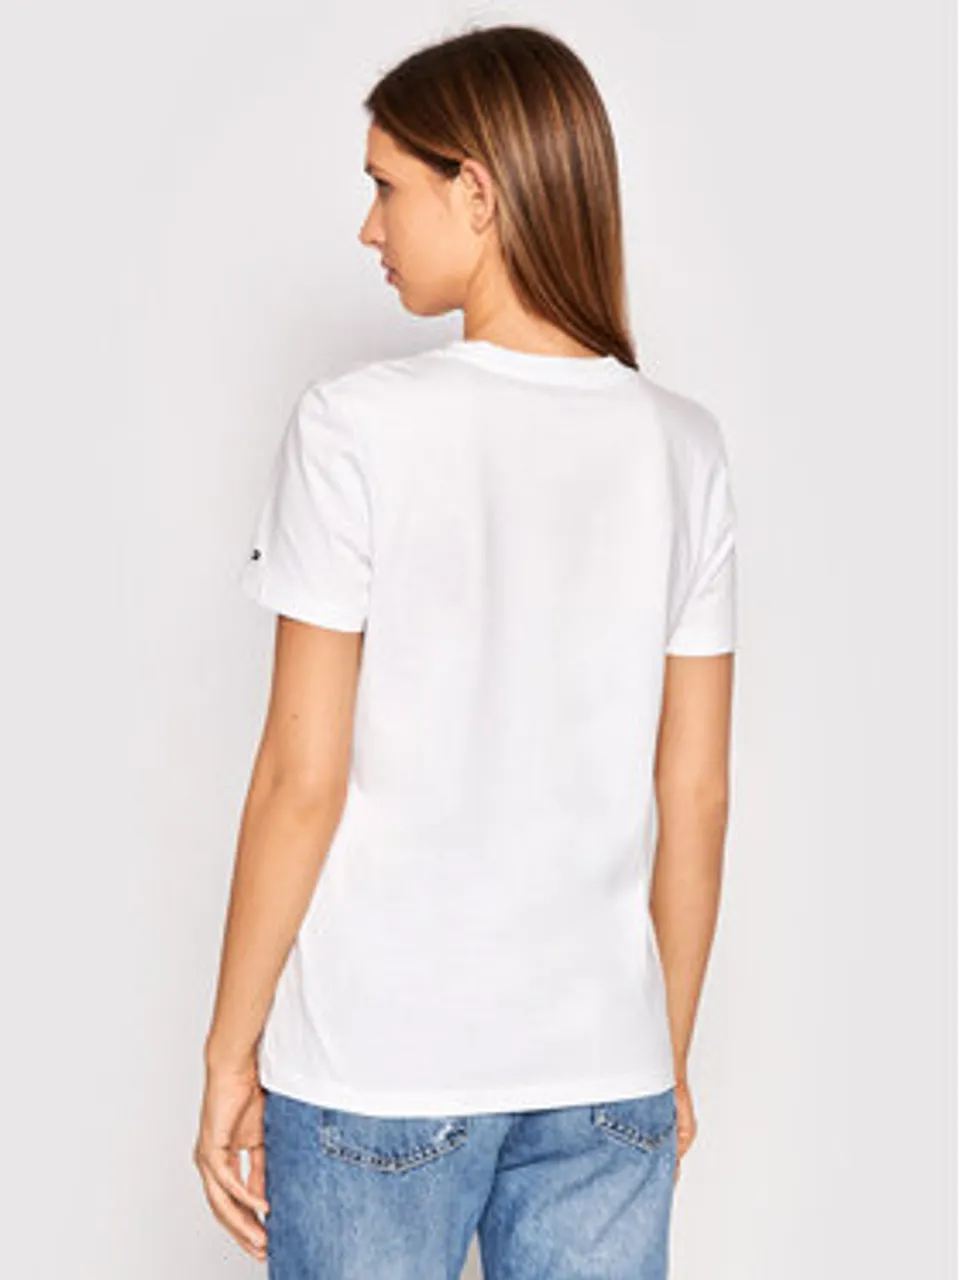 Tommy Hilfiger T-Shirt Heritage C-Nk WW0WW31999 Weiß Regular Fit